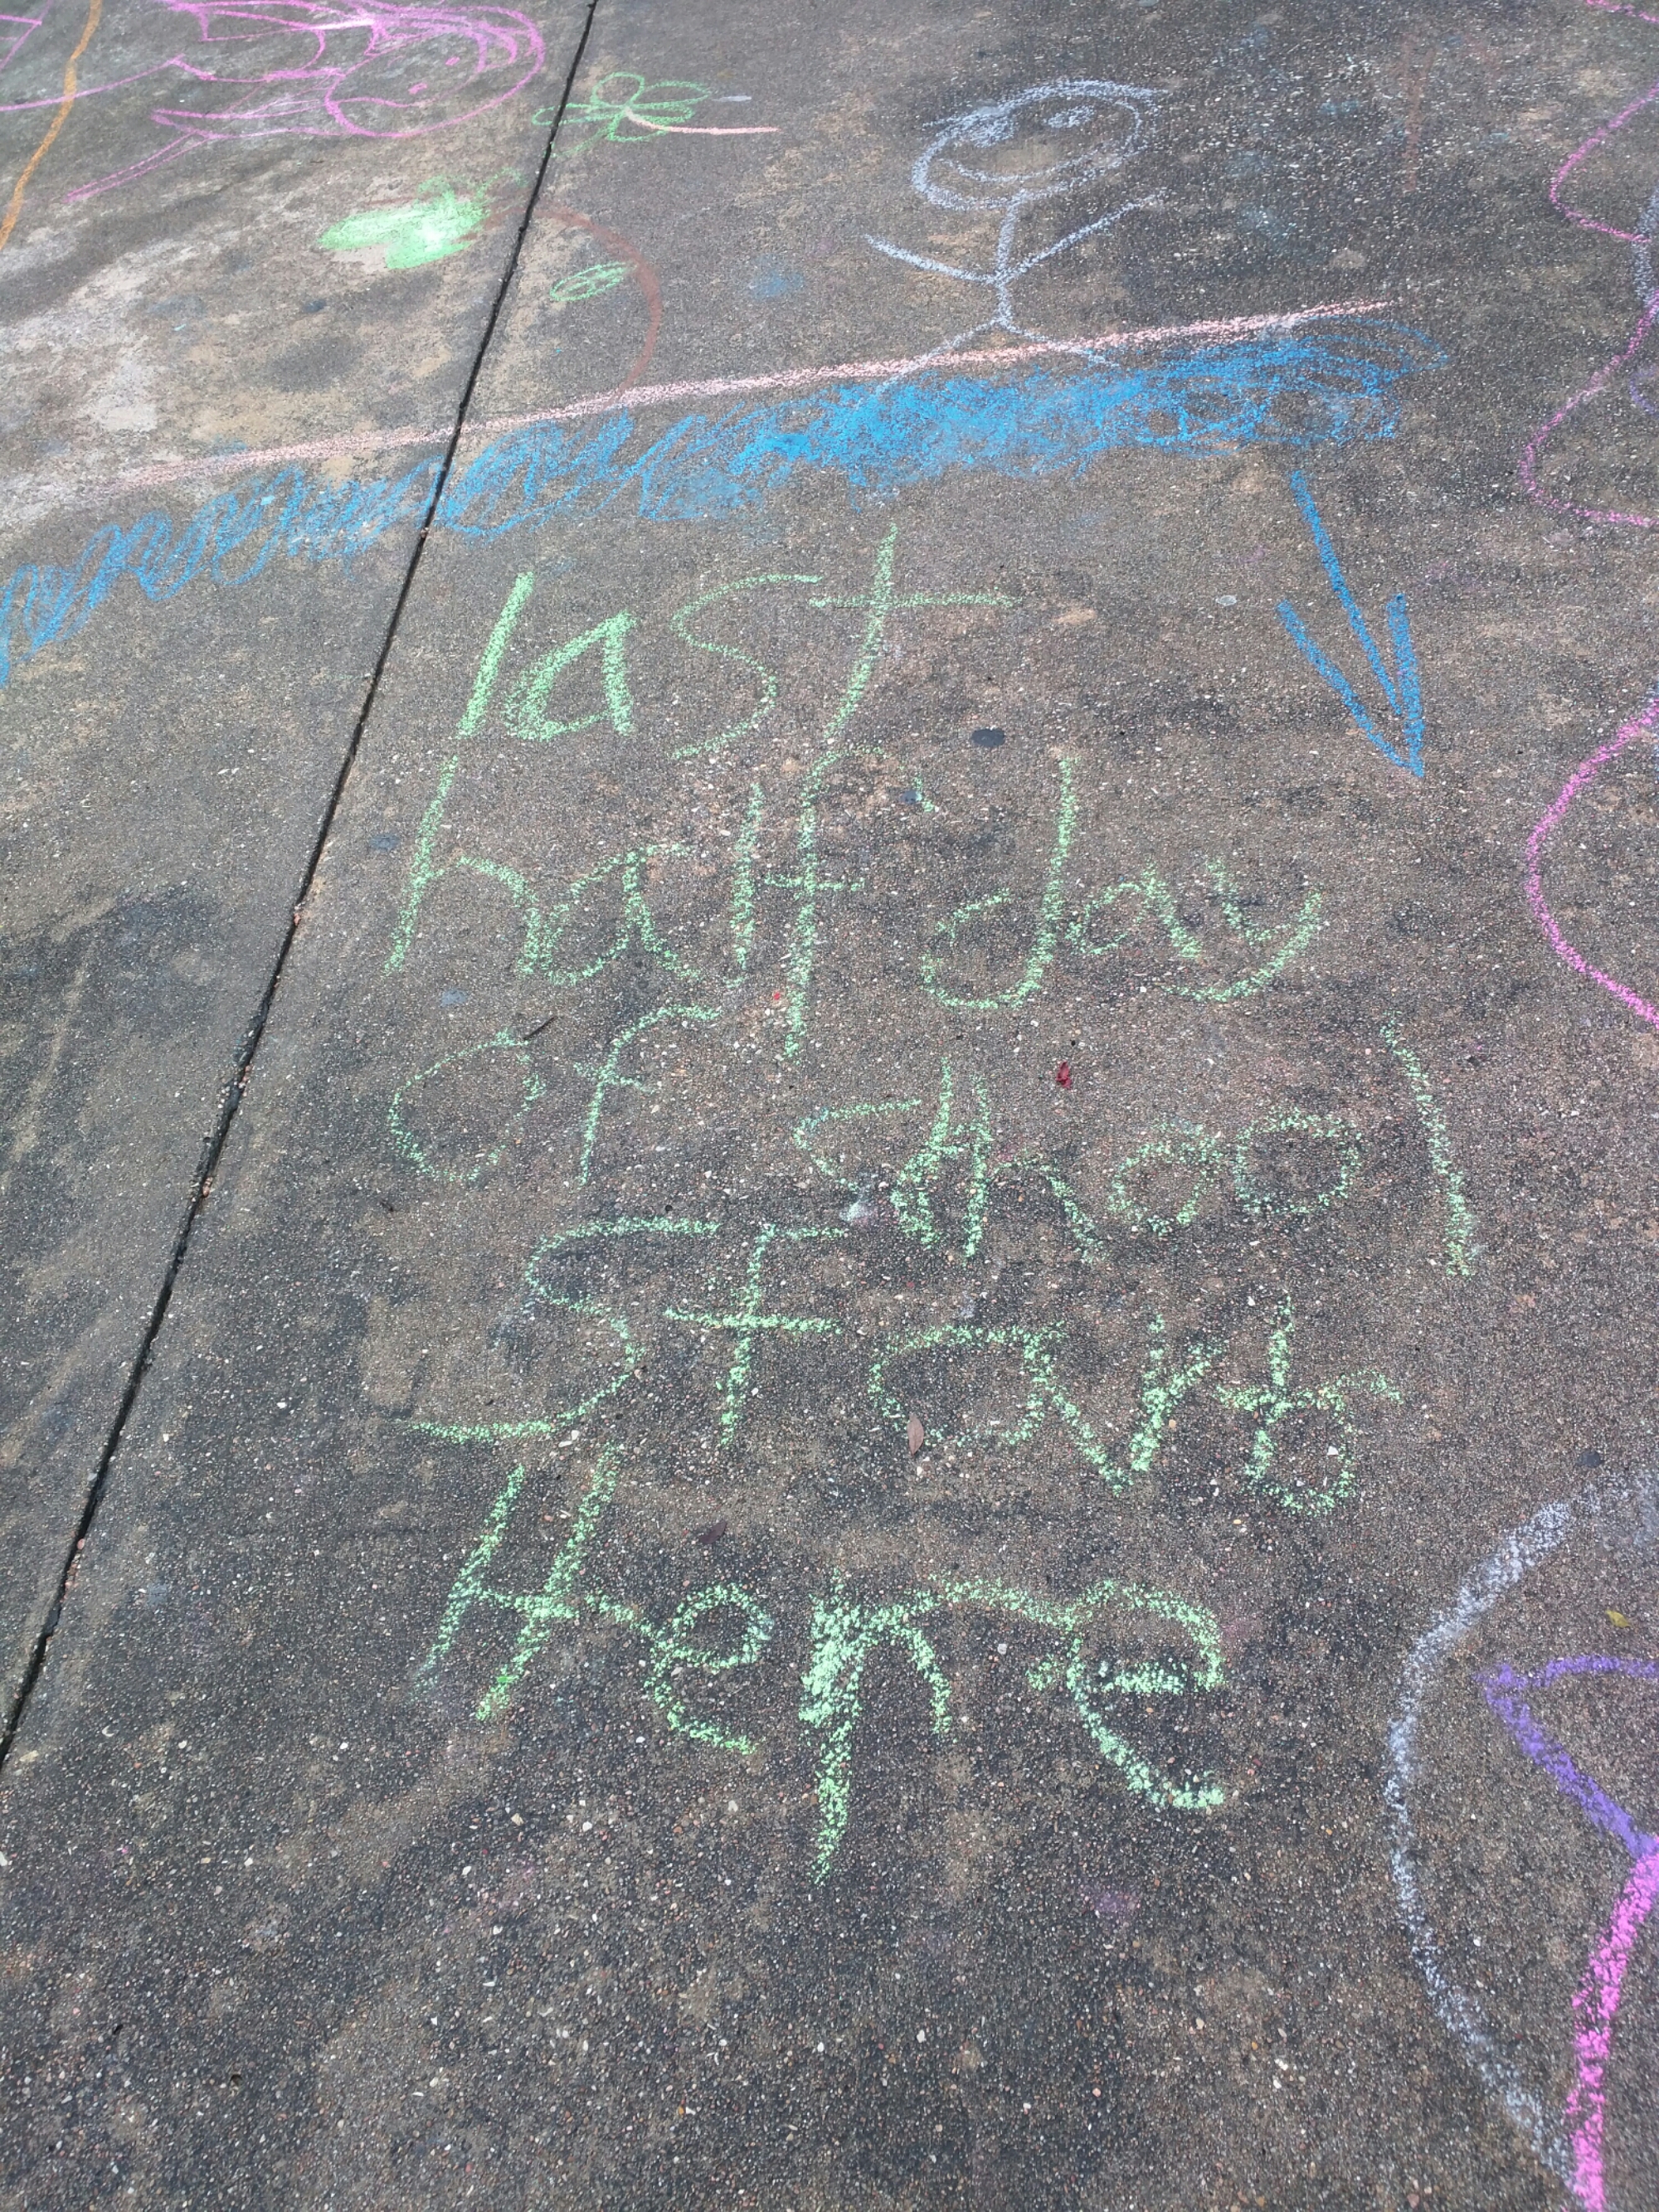 Chalk writing on sidewalk